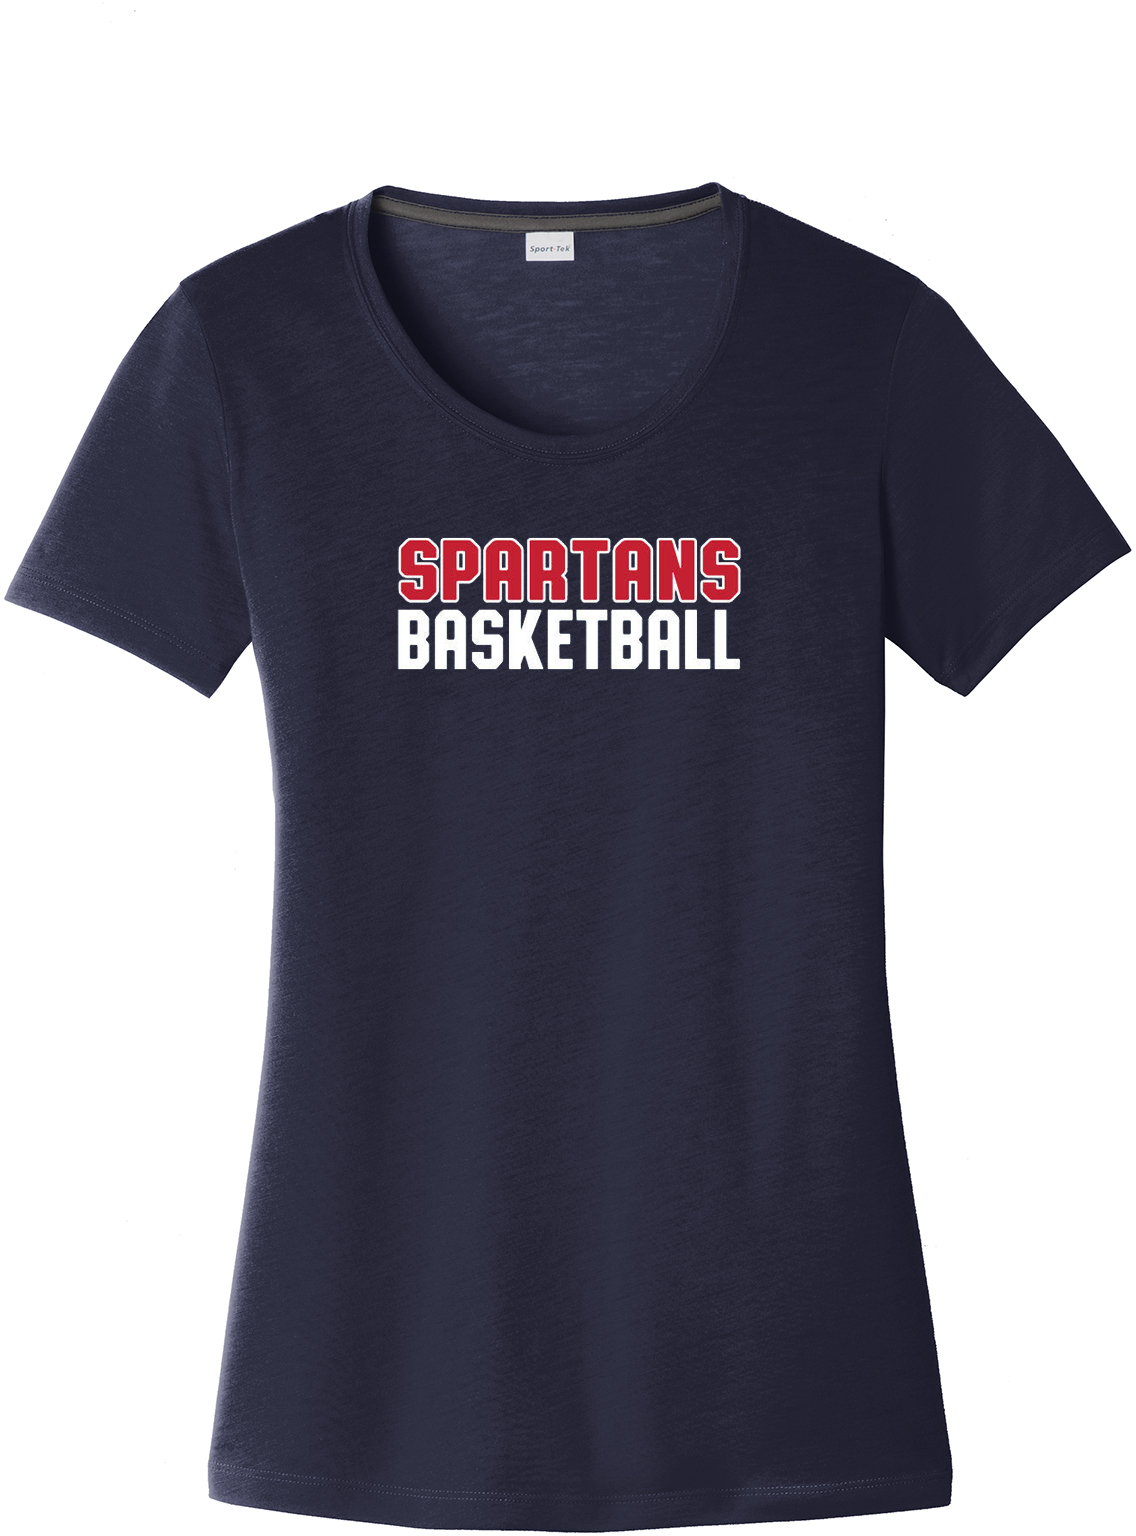 Holy Spirit Basketball Women's CottonTouch Performance T-Shirt